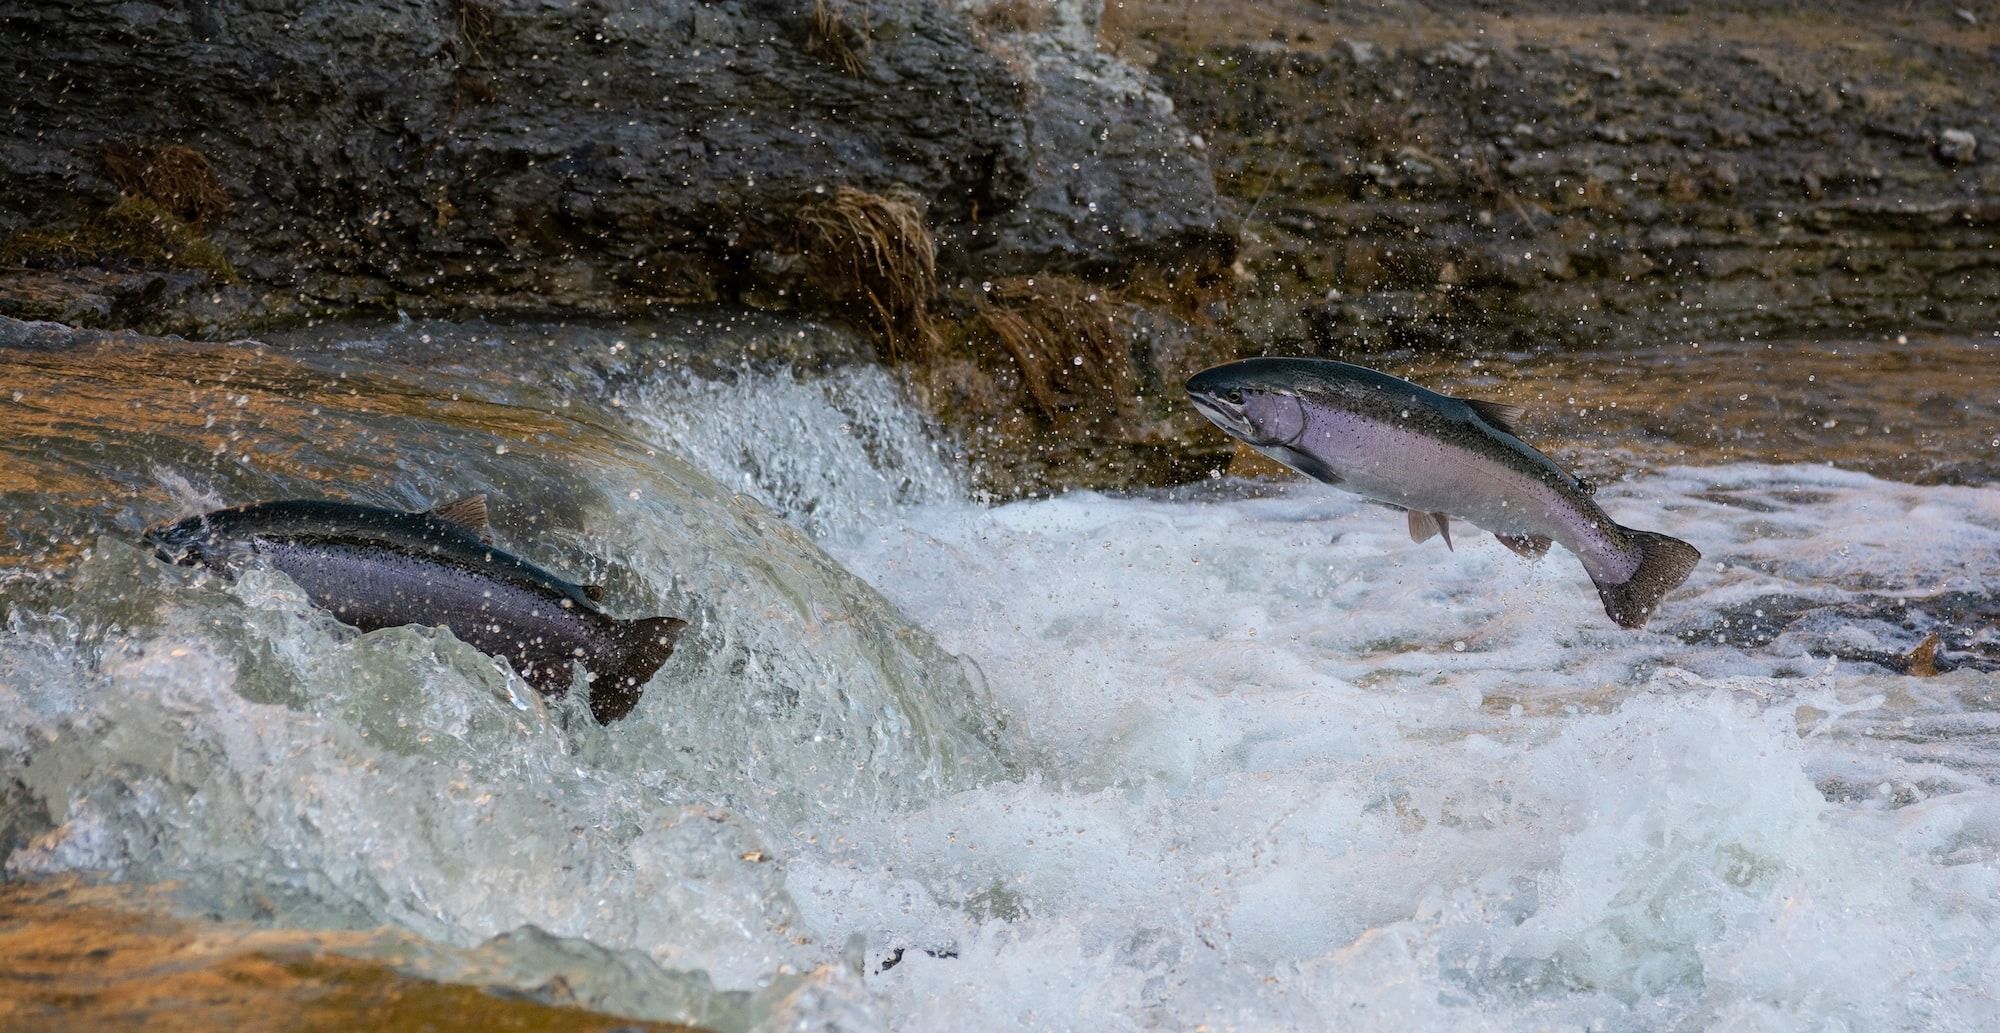 Salmon migration during breeding season